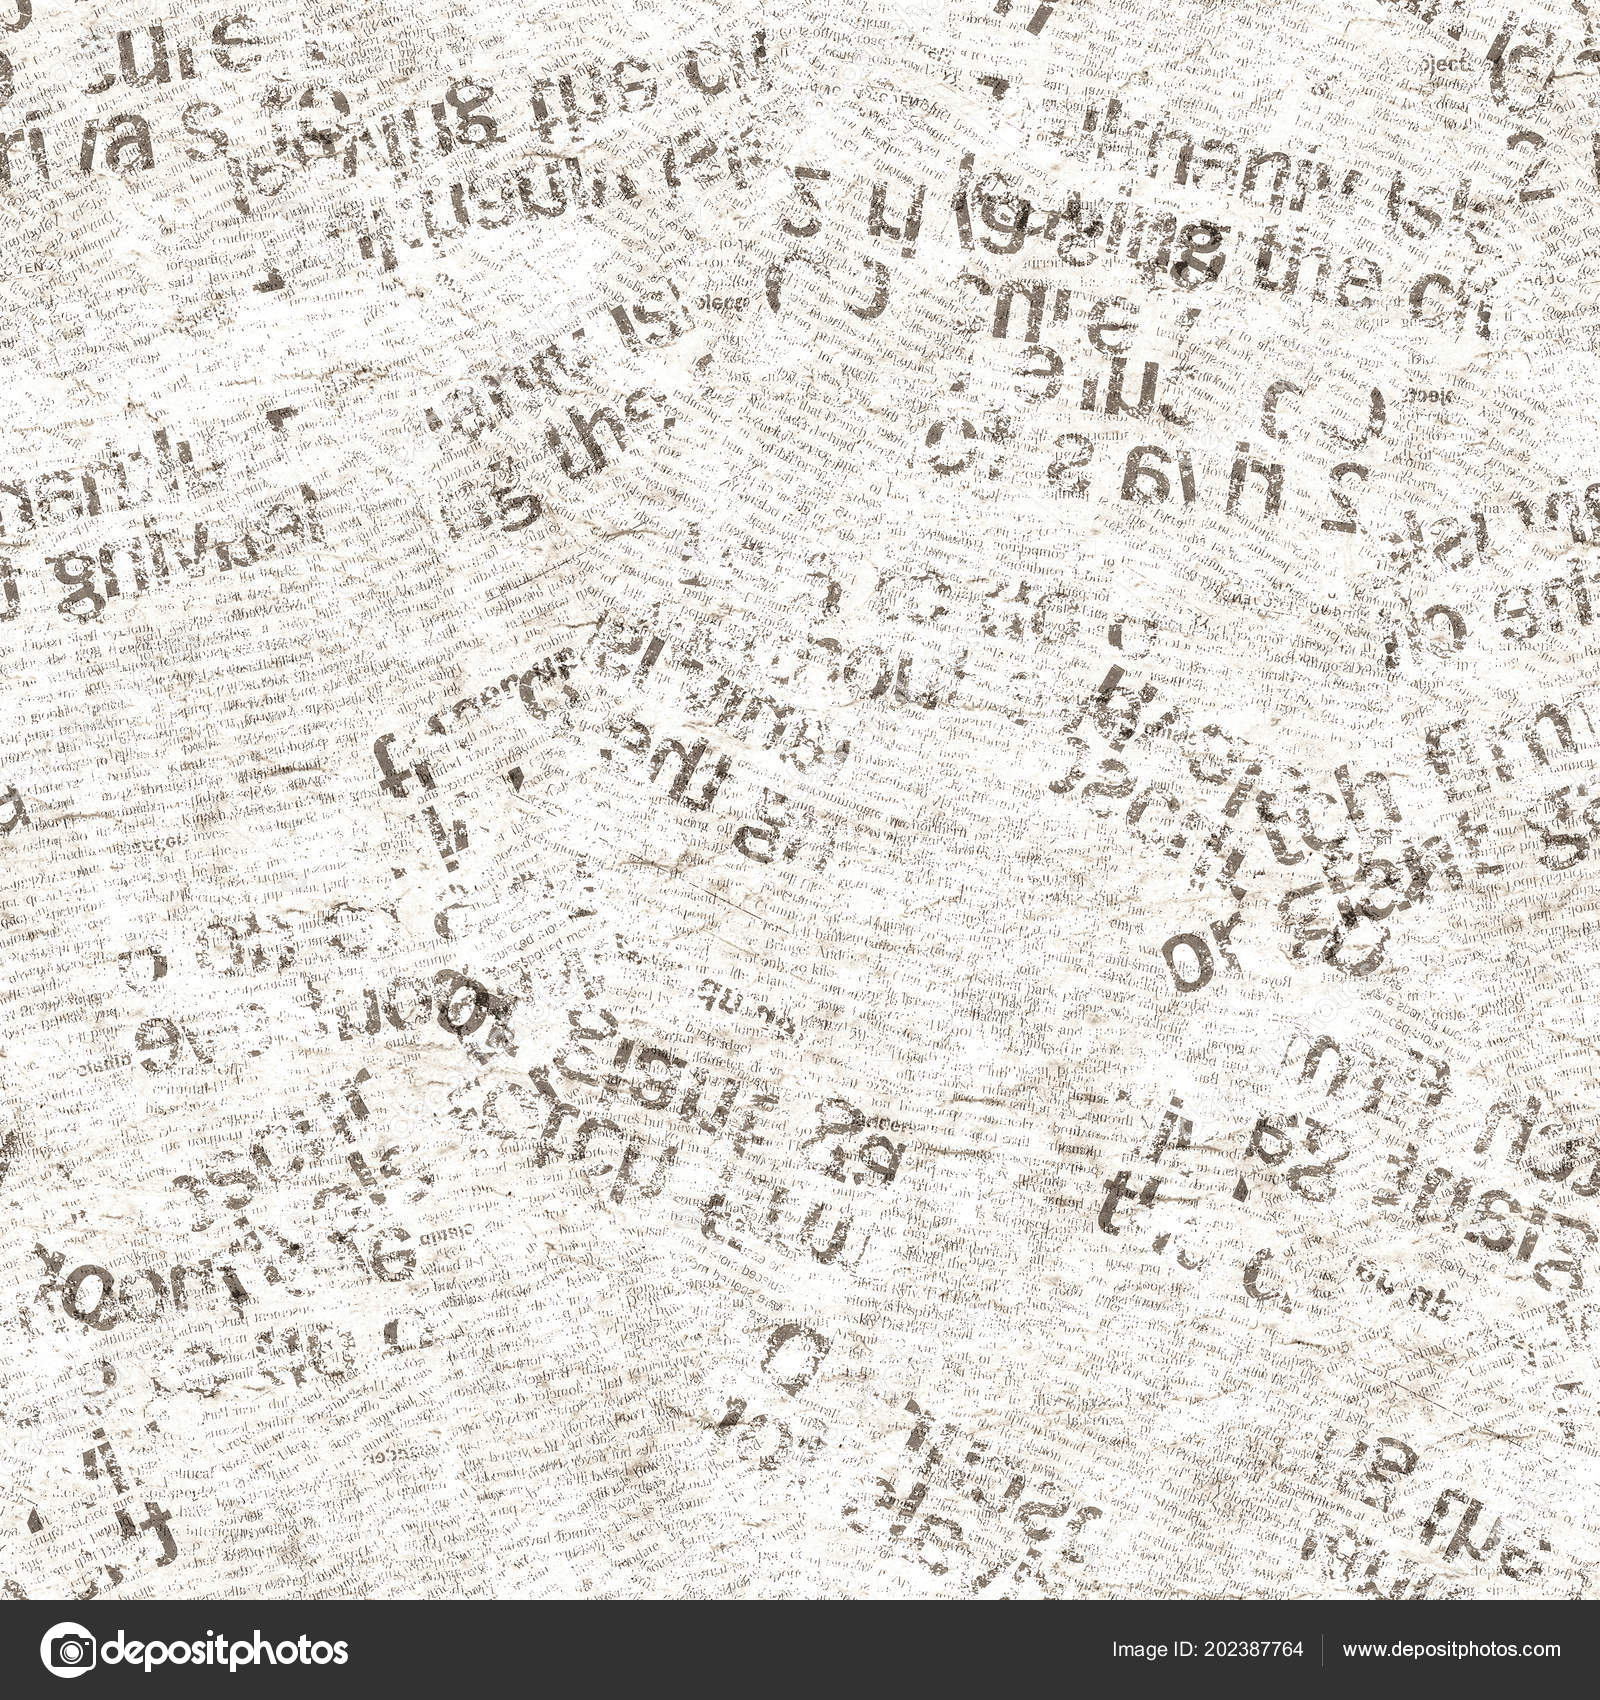 Grunge Newsprint Digital Paper Texture Backgrounds